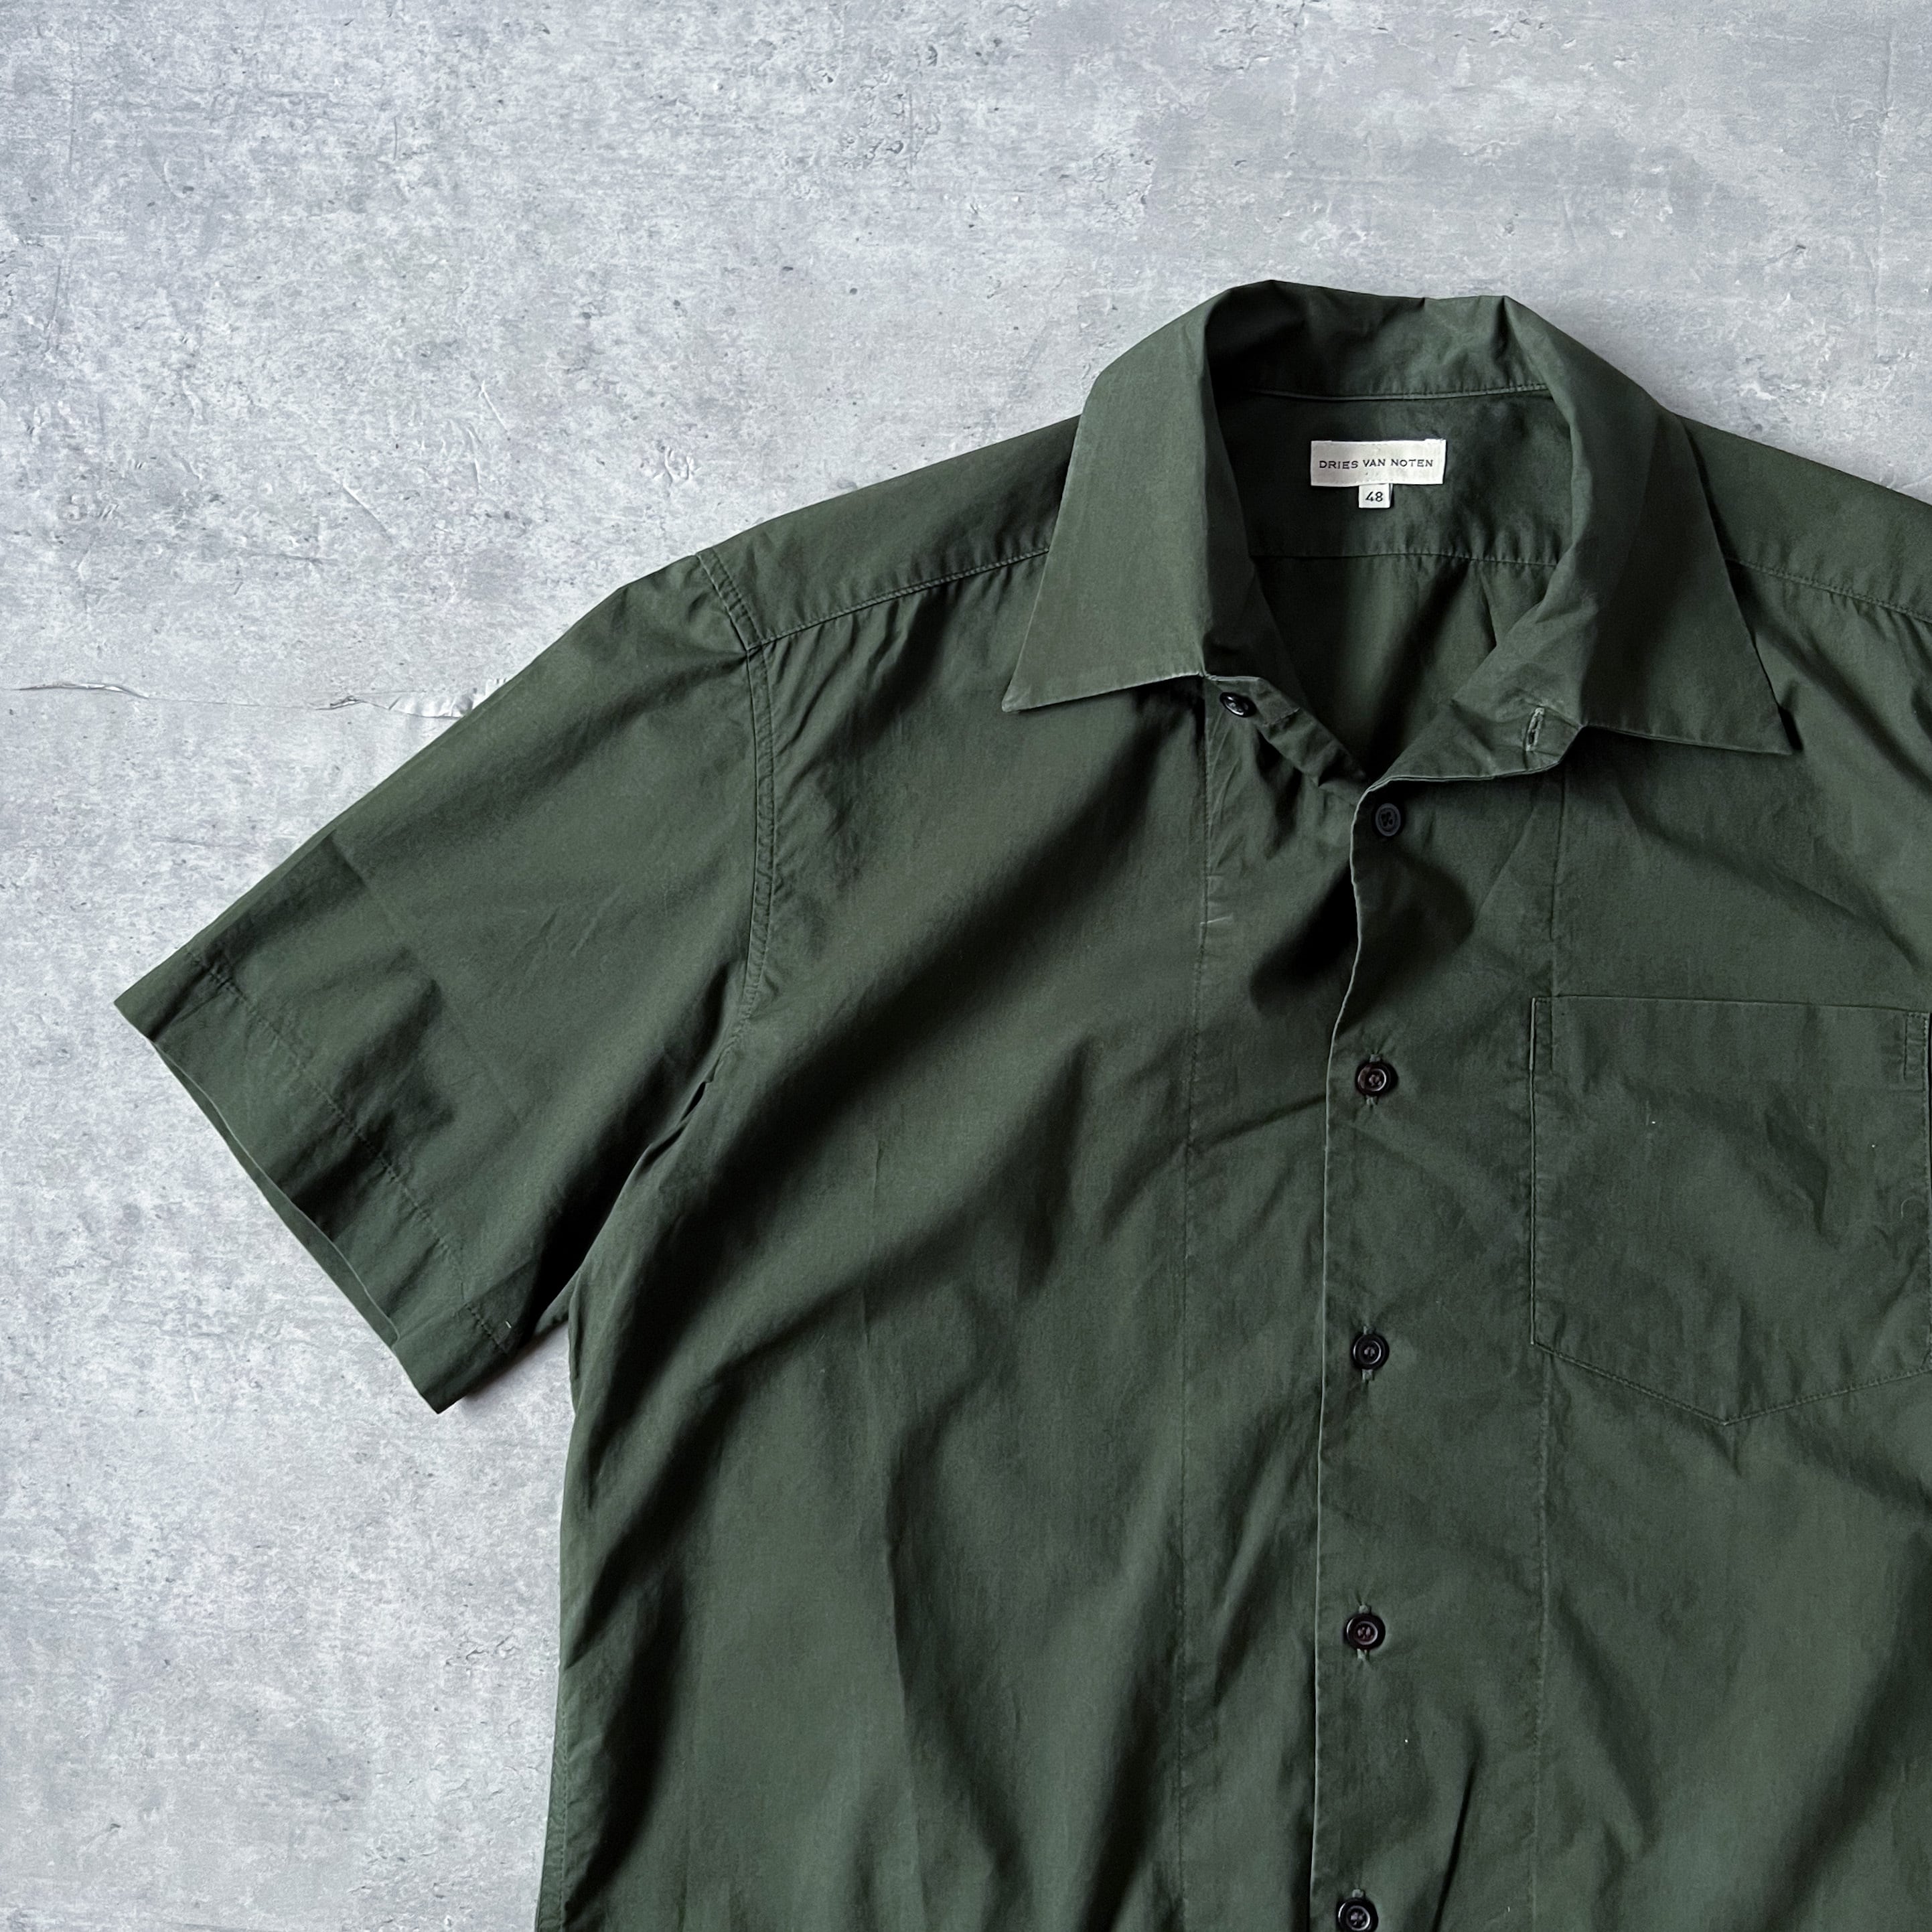 98s 〜 03s “Dries van noten” ライカ期 dark green open collar shirt 